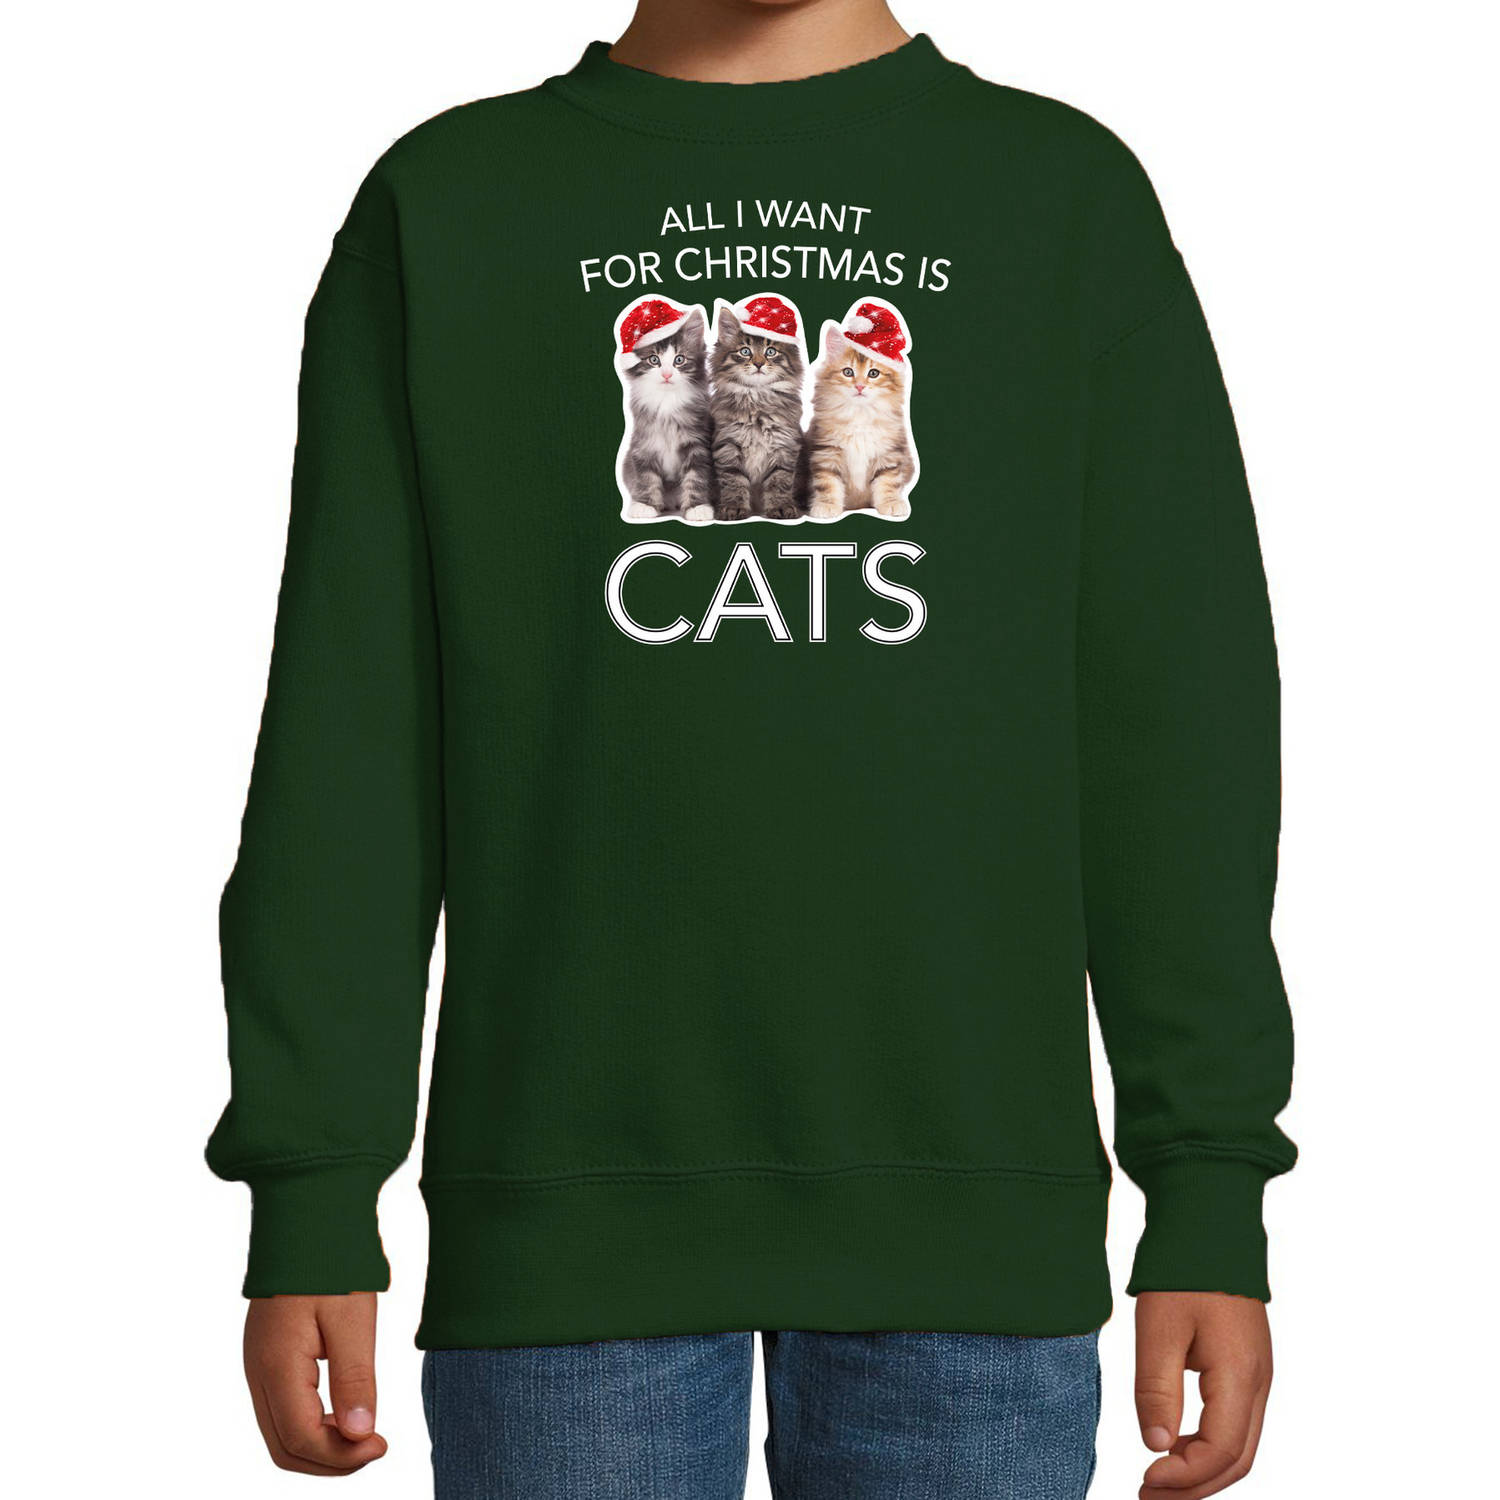 Groene Kersttrui / Kerstkleding All I want for christmas is cats voor kinderen 14-15 jaar (170/176) - kerst truien kind